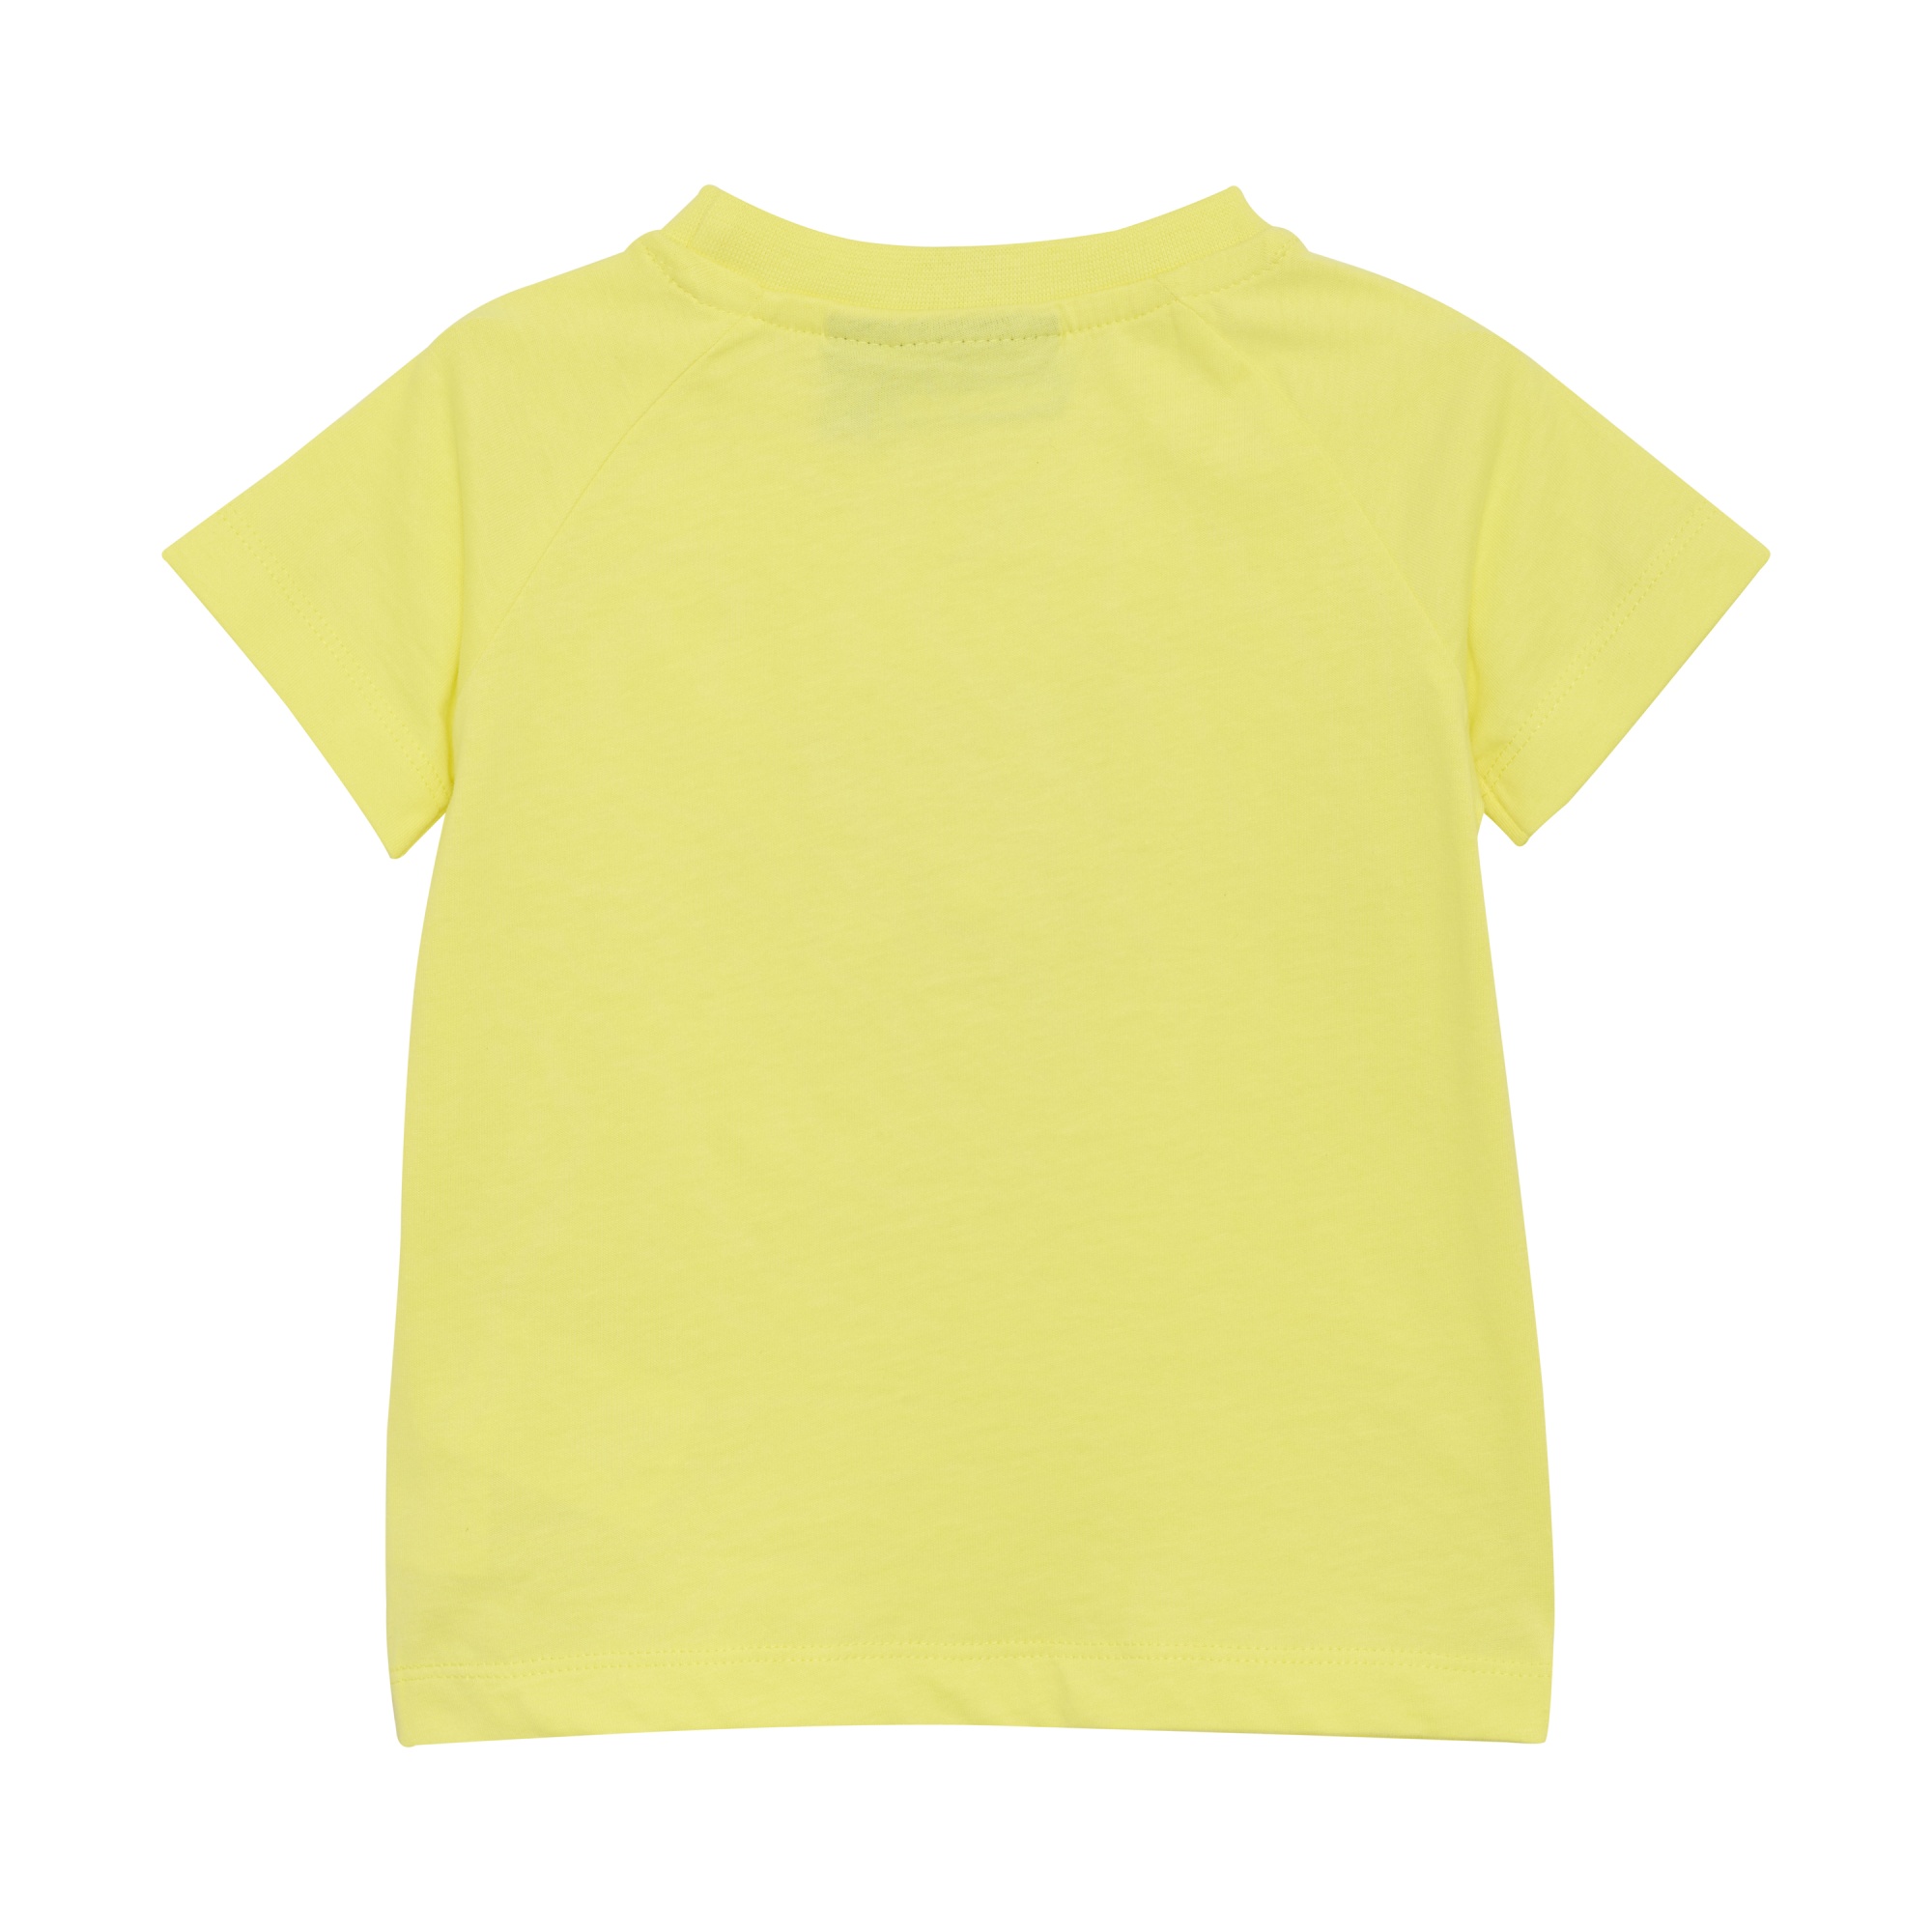 Детская футболка Color Kids Желтая | фото